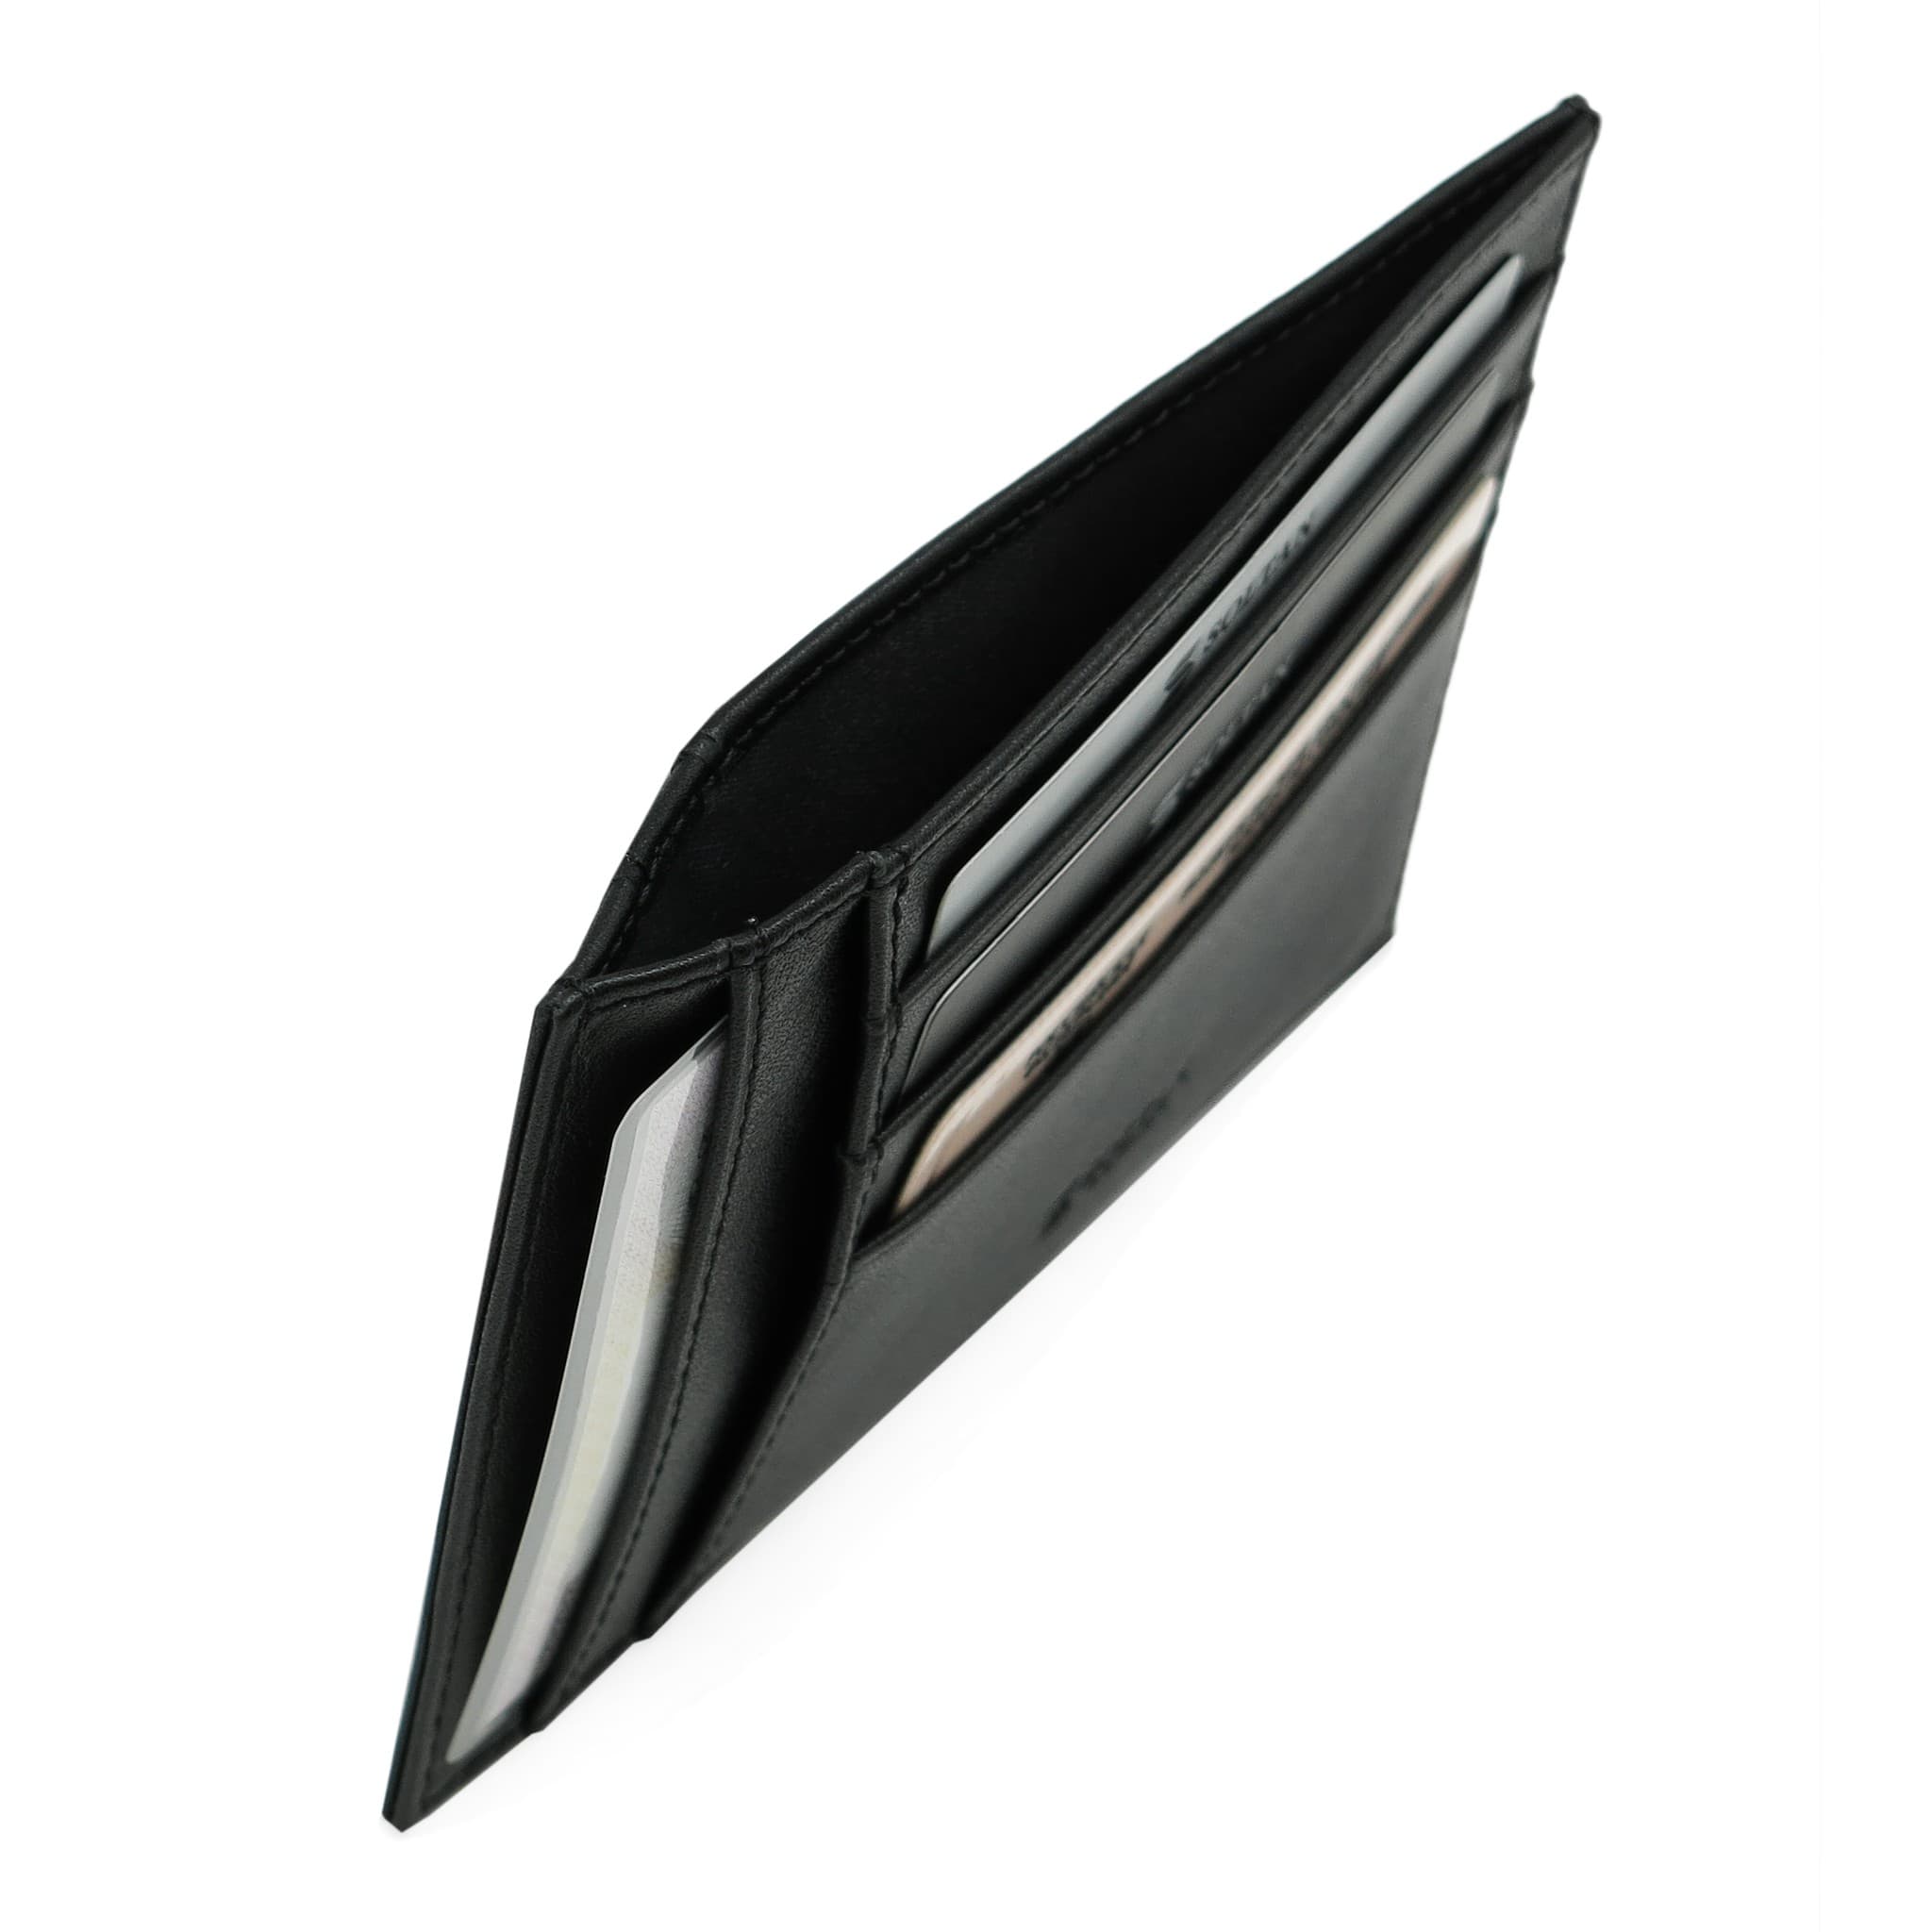 Черный кожаный футляр для автодокументов и кредиток SOLTAN 061 01 01